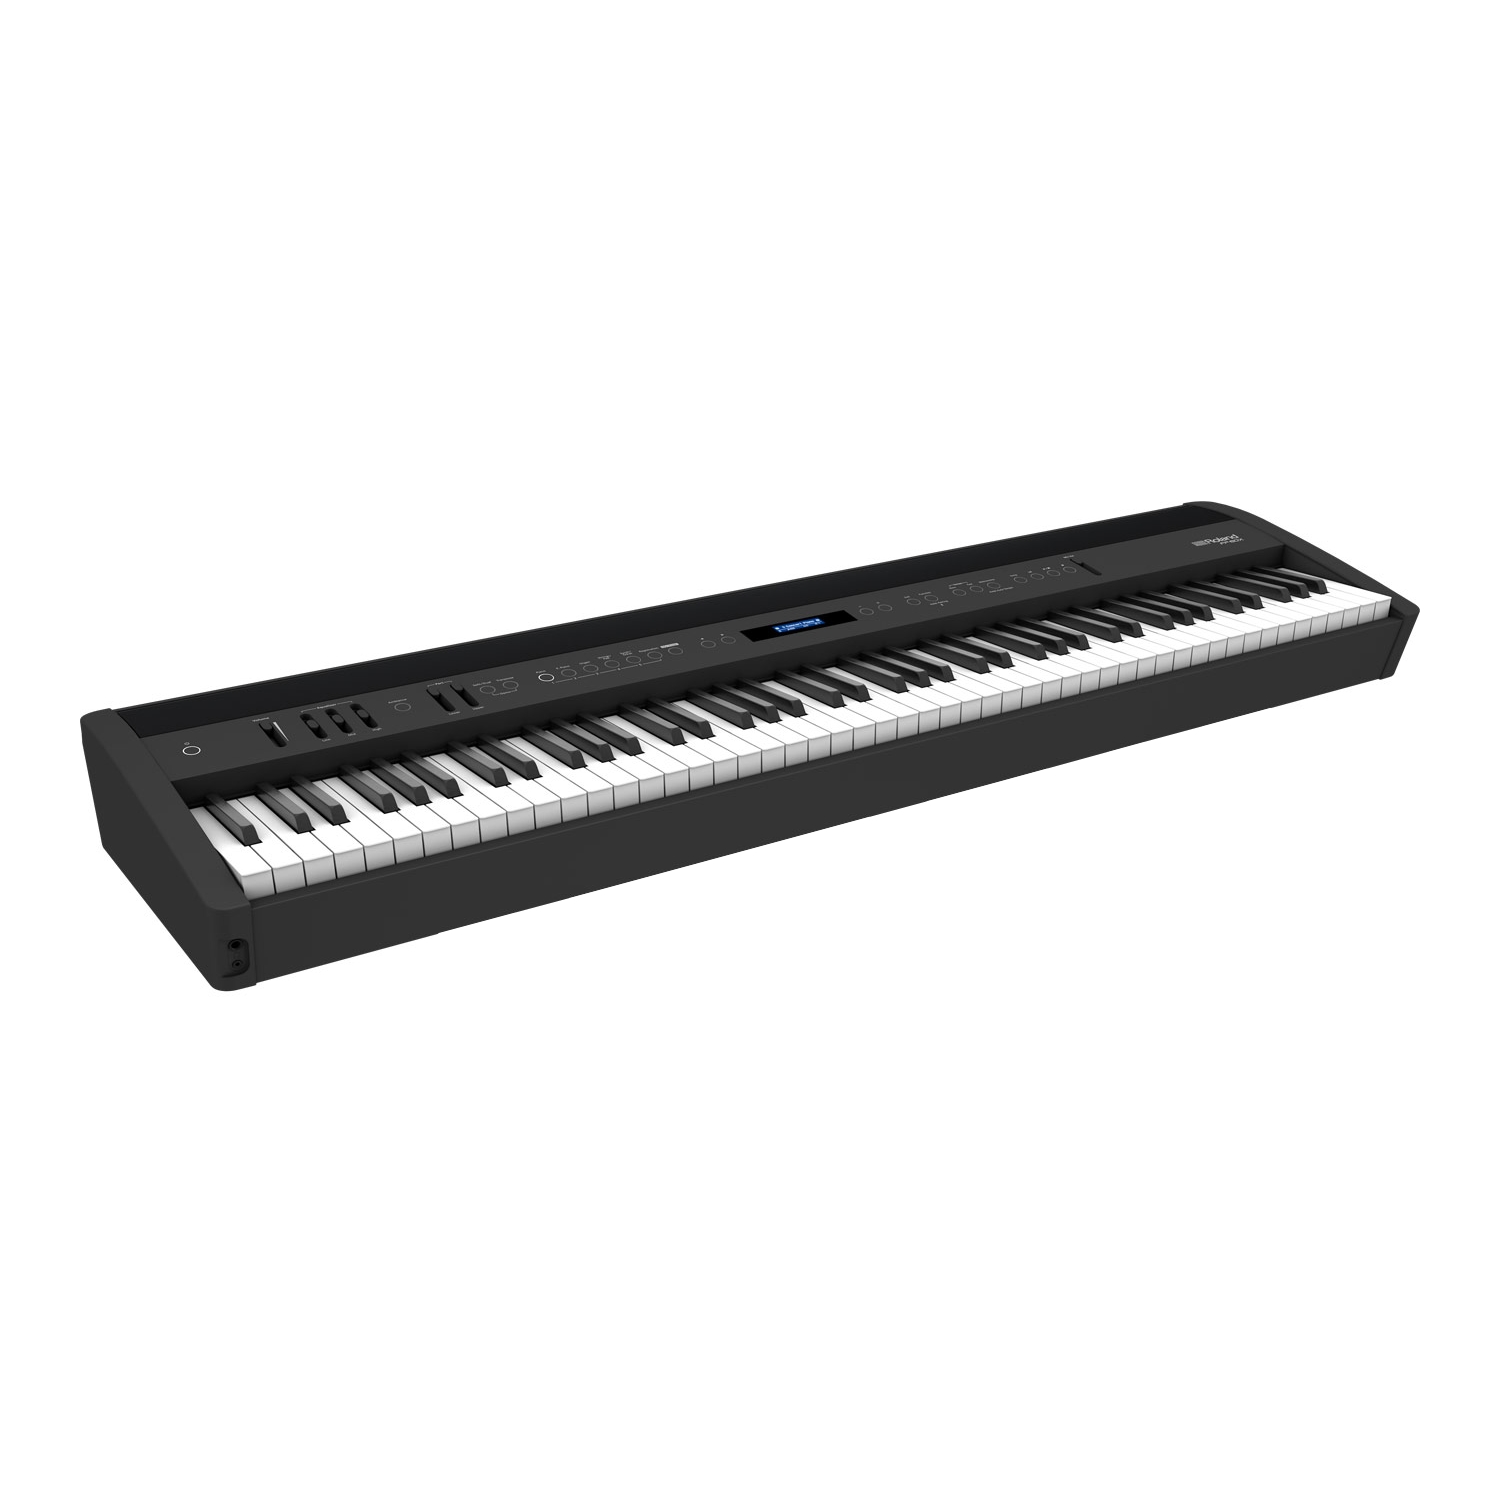 ROLAND FP-60X-BK - цифровое фортепиано, 88 кл. PHA-4 Standard, 358 тембров, 256 полиф., (цвет чёрный